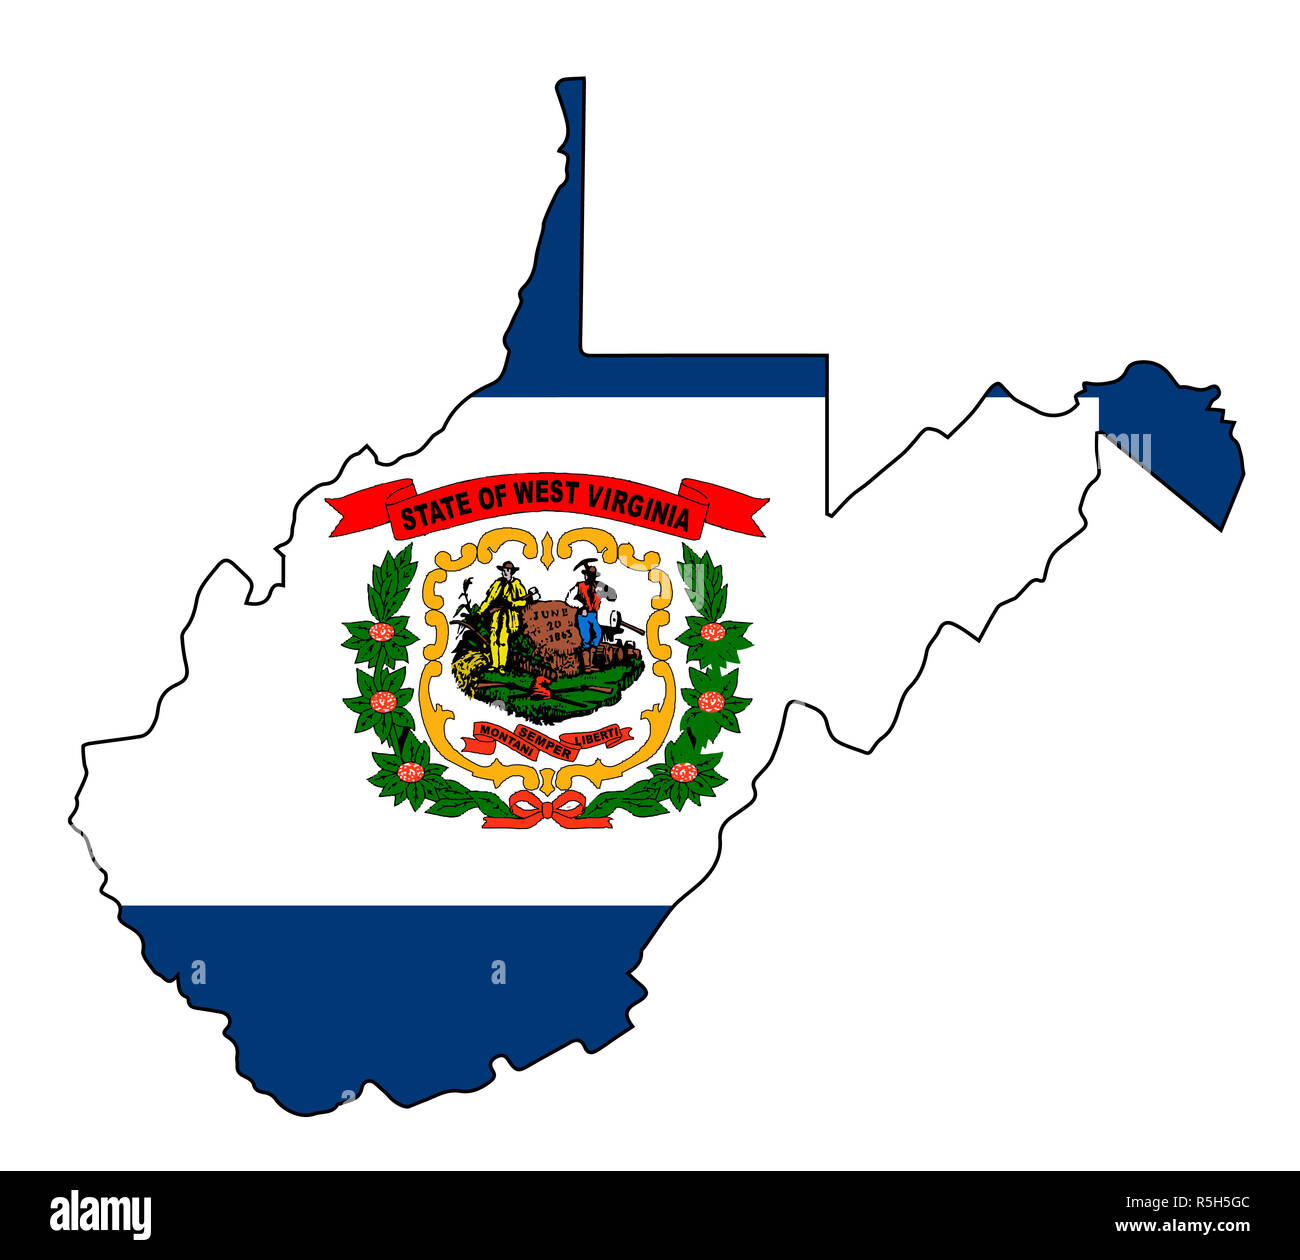 Mapa de contorno del estado de West Virginia y la bandera Fotografía de stock Alamy